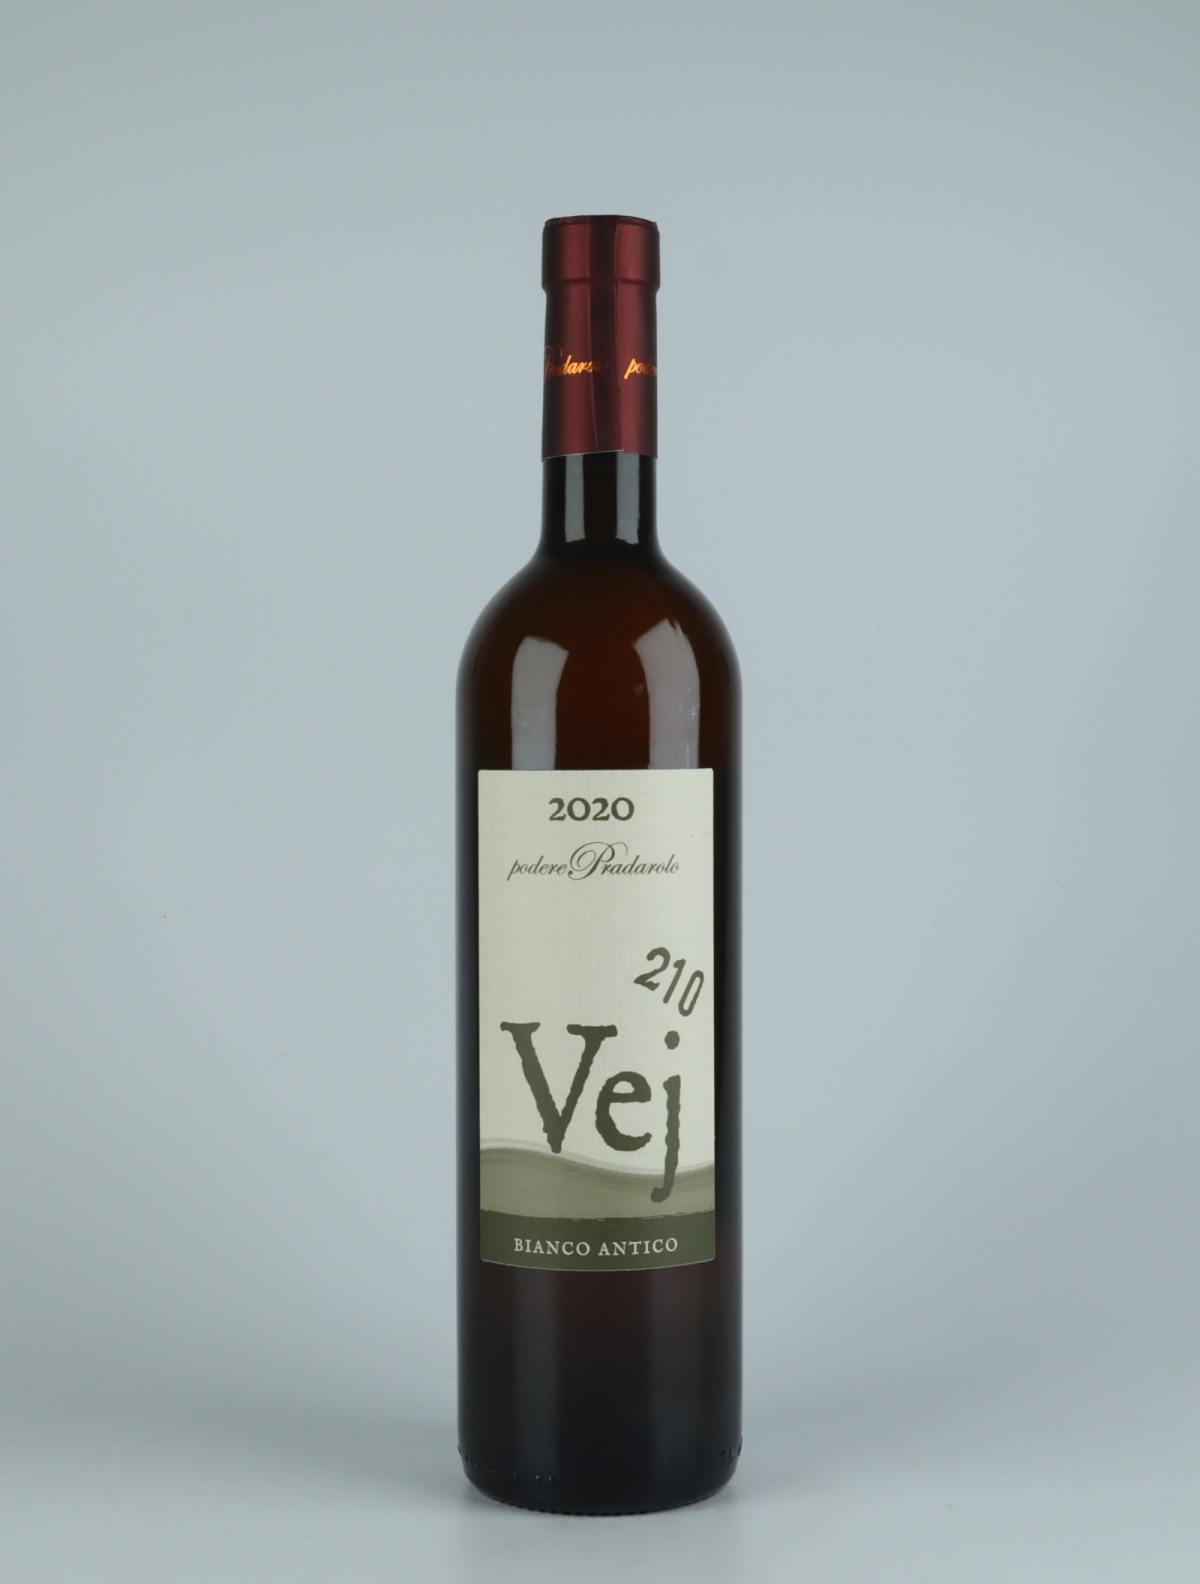 A bottle 2020 Vej 210 - Bianco Antico Orange wine from Podere Pradarolo, Emilia-Romagna in Italy